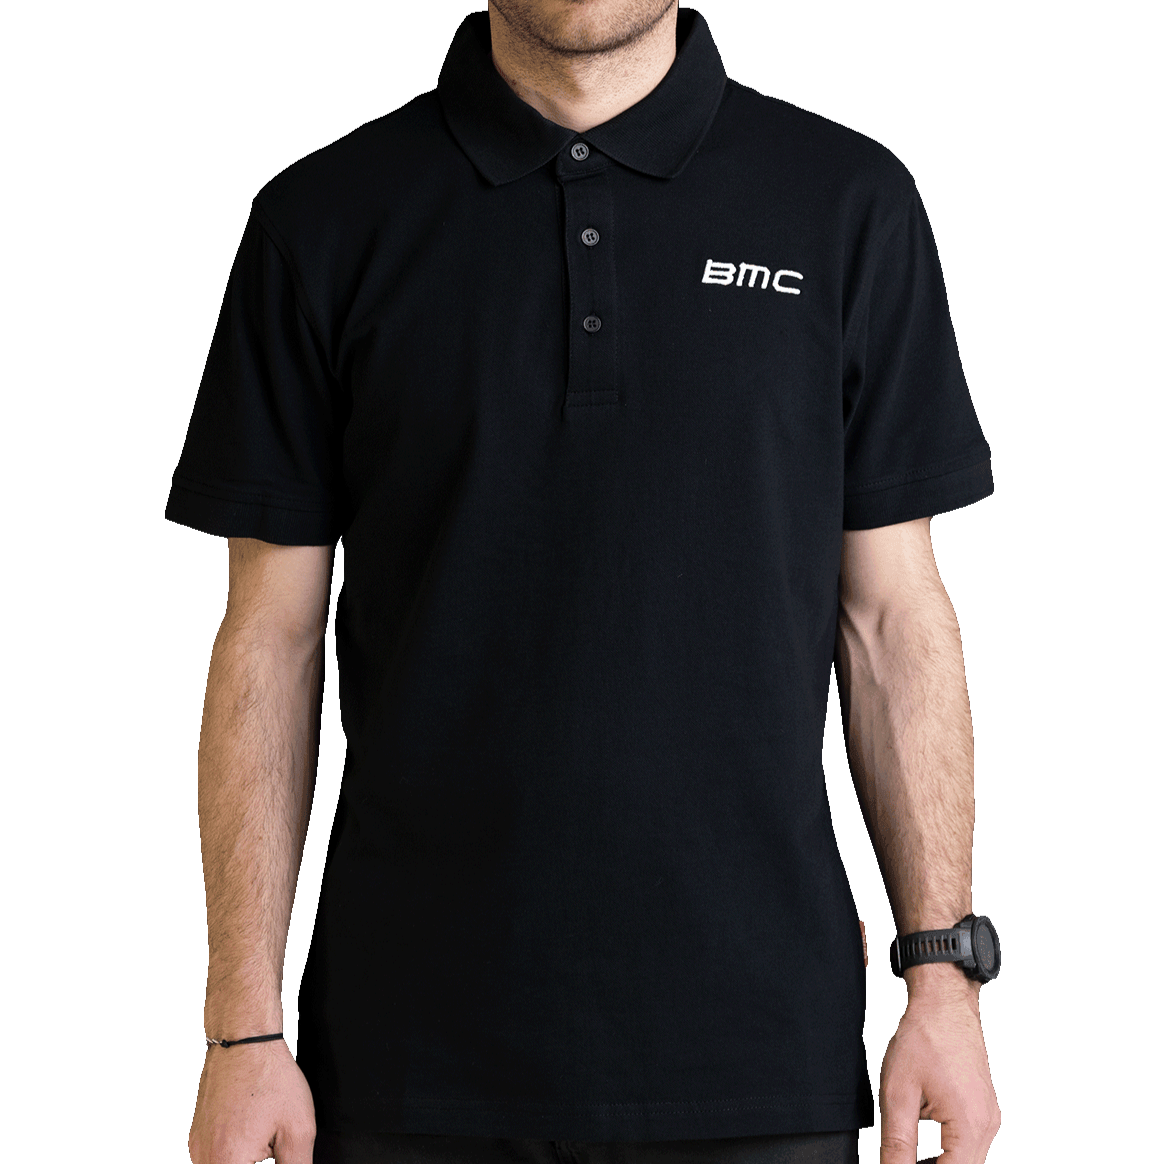 BMC Polo Shirt - Men's Ride BMC cc0